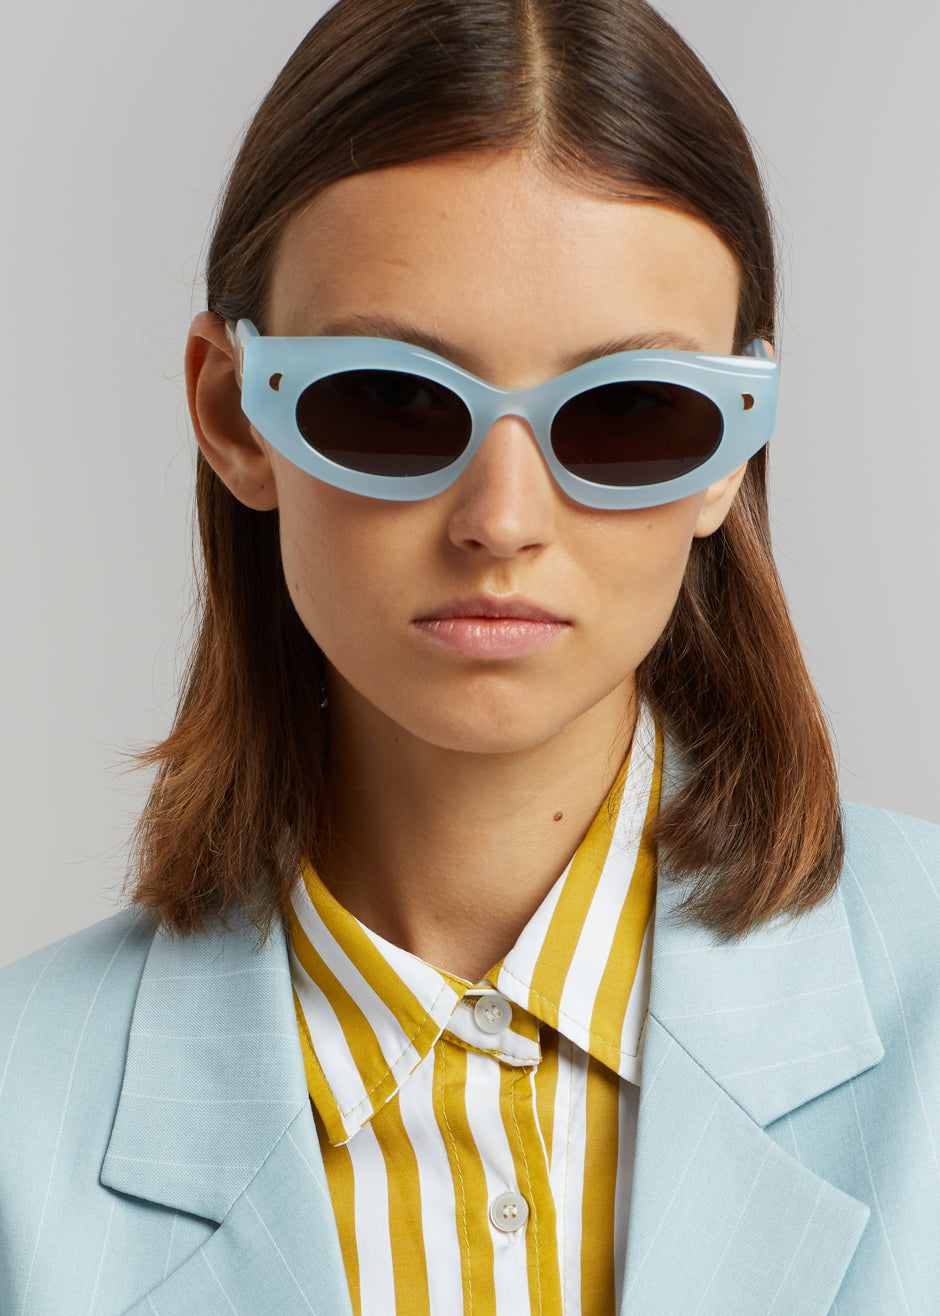 Nanushka Leonie Bio Plastic Sunglasses - Blue - 1